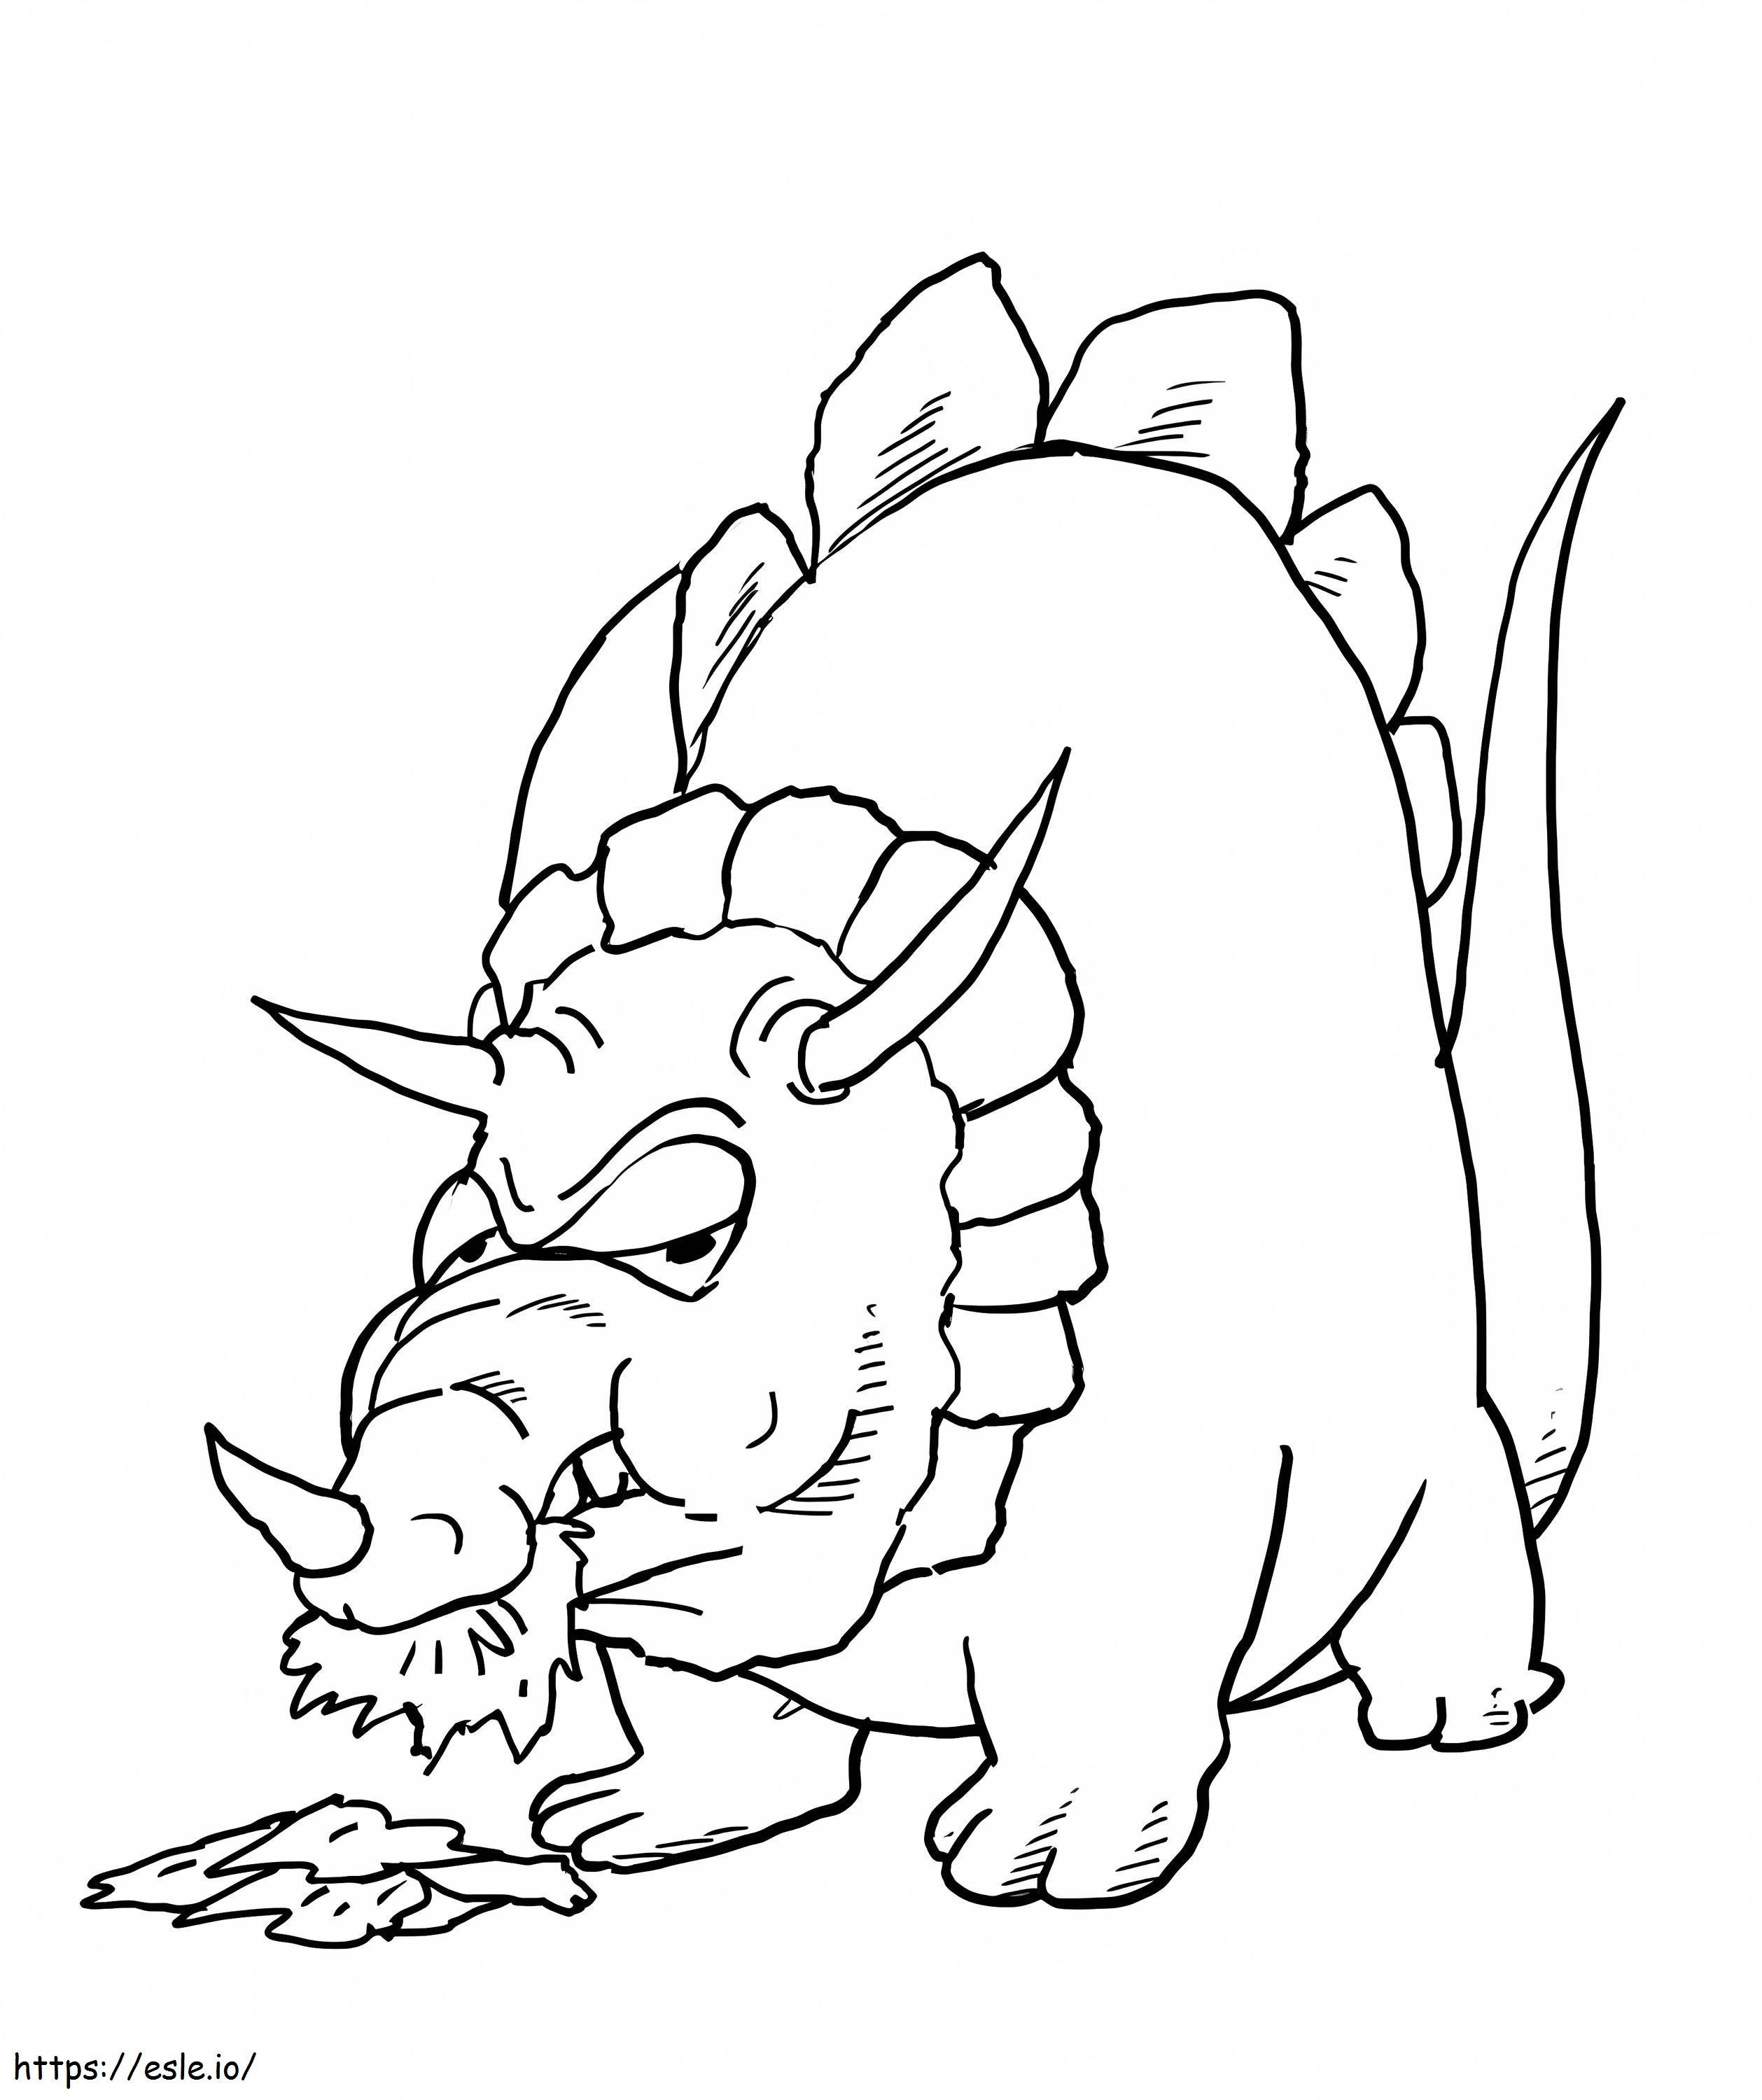 Grube jedzenie Triceratopów kolorowanka